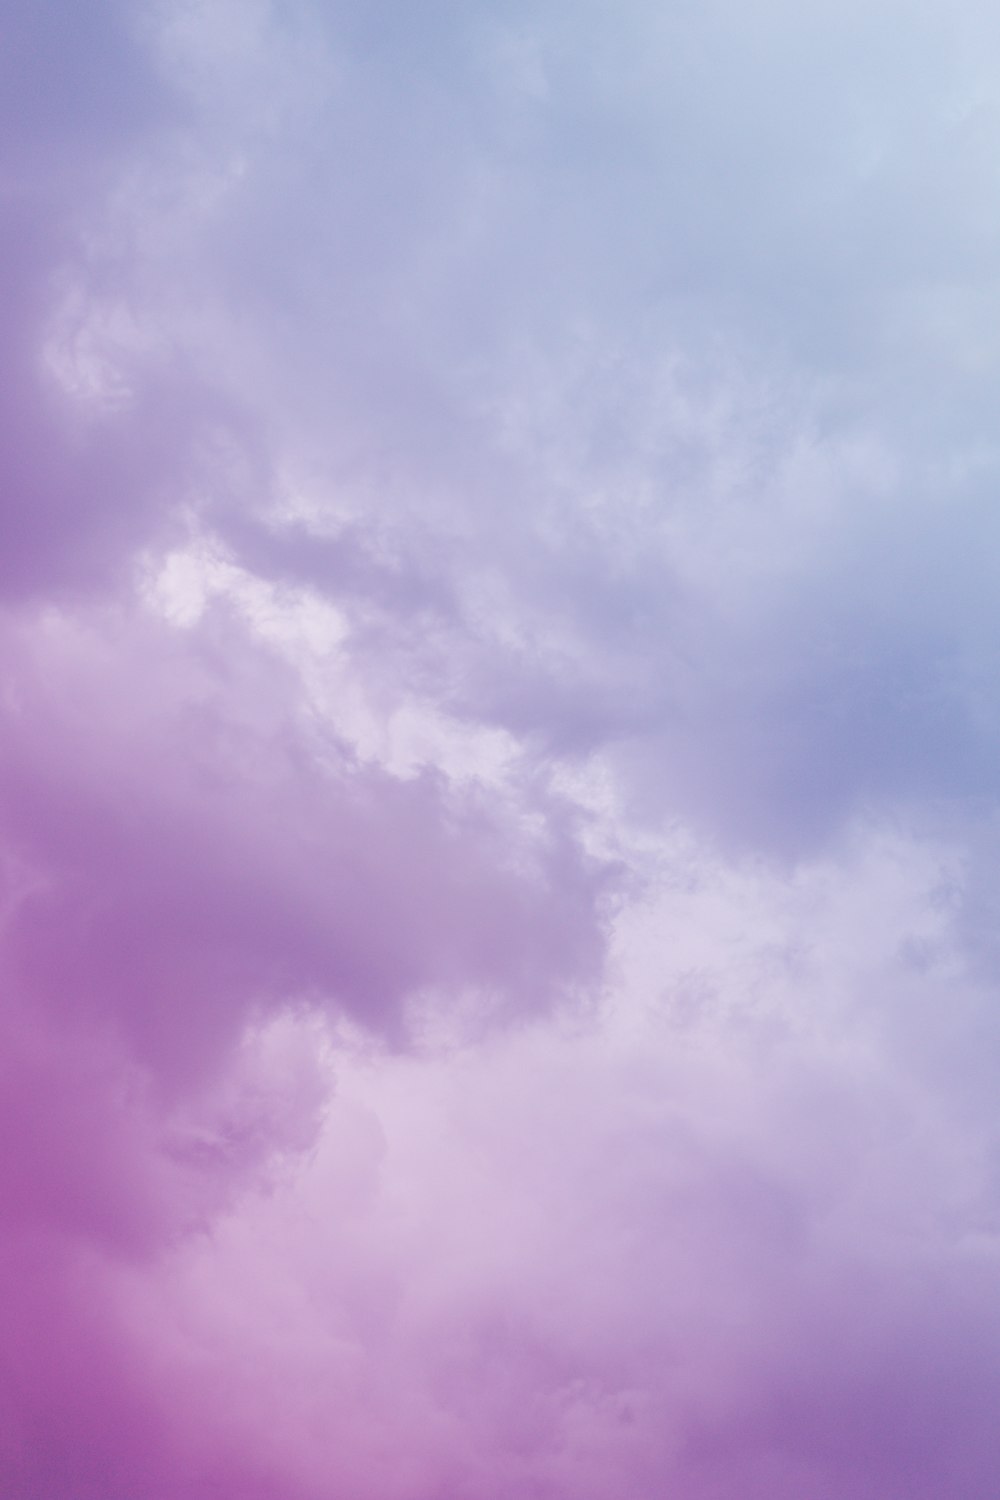 cielo nublado púrpura y blanco